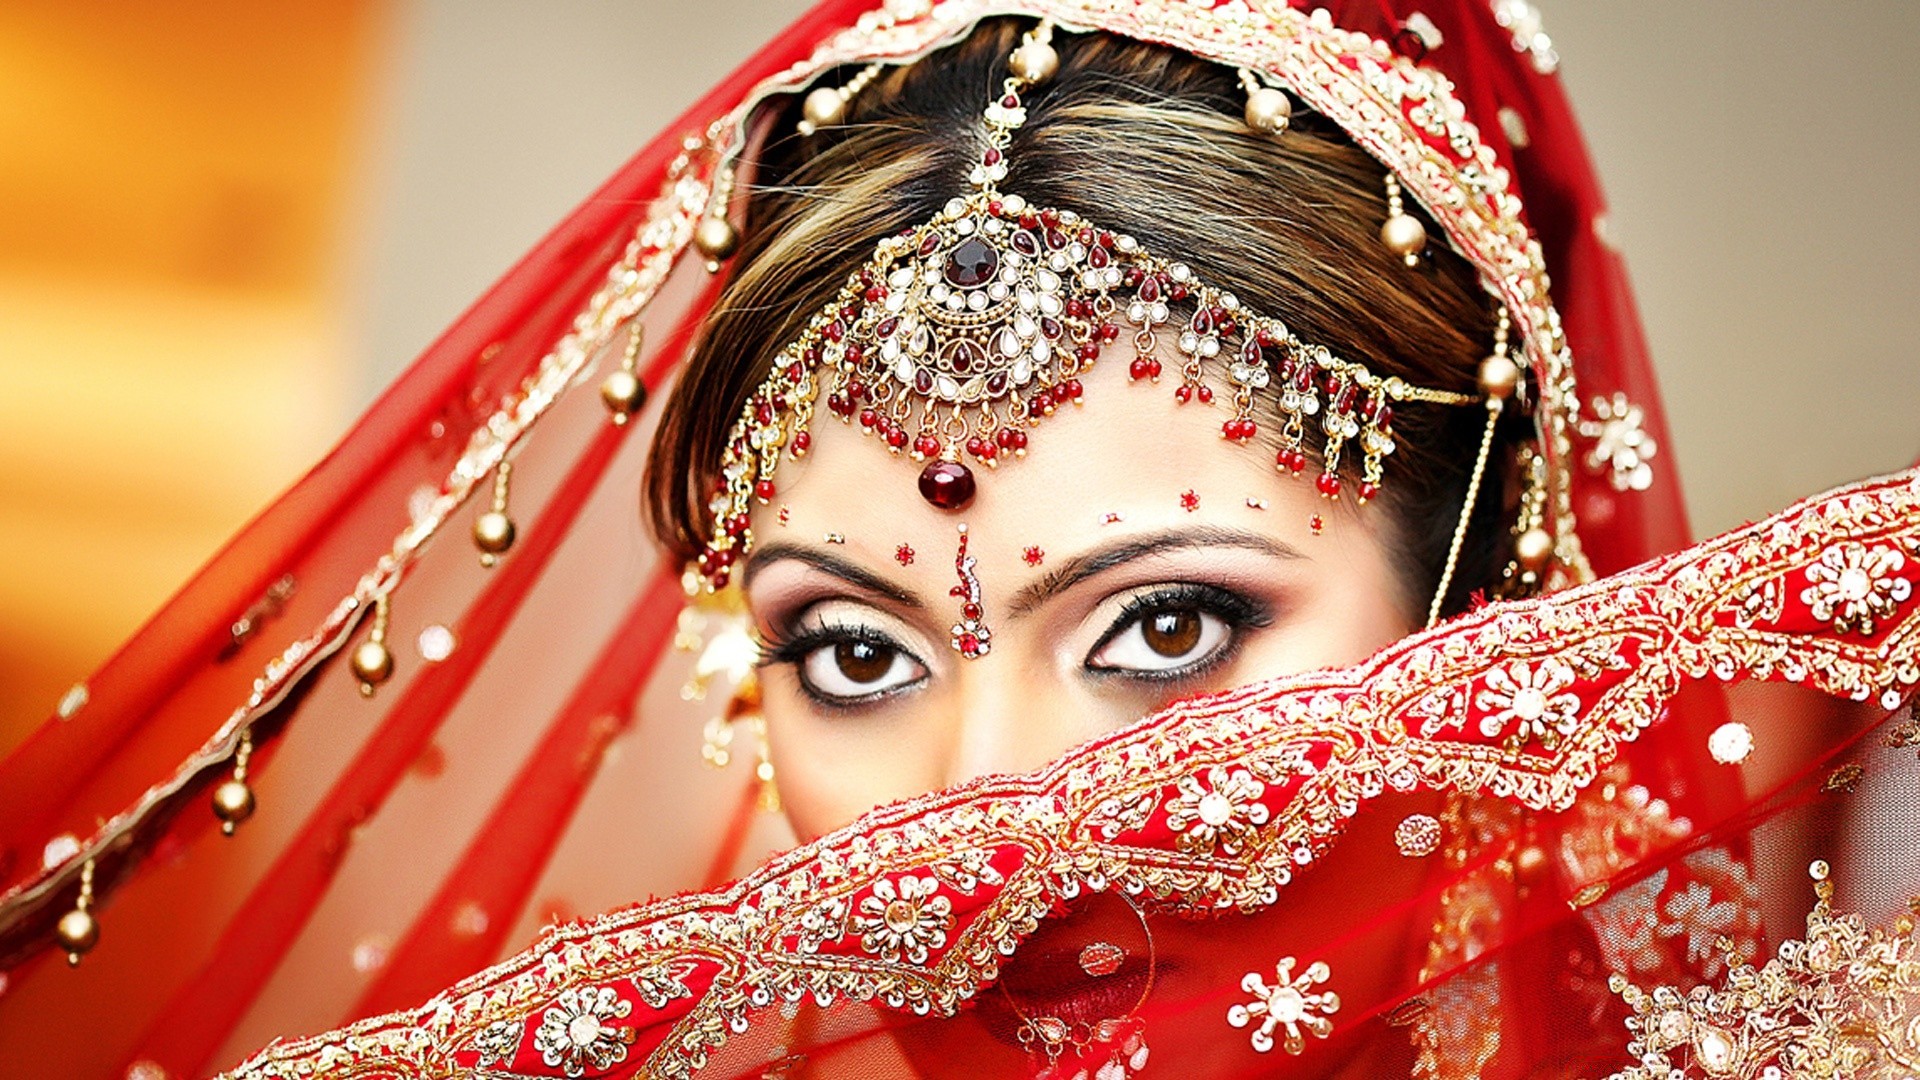 другие девушки традиционные ювелирные изделия золото мода вуаль свадьба фестиваль женщина невеста зима